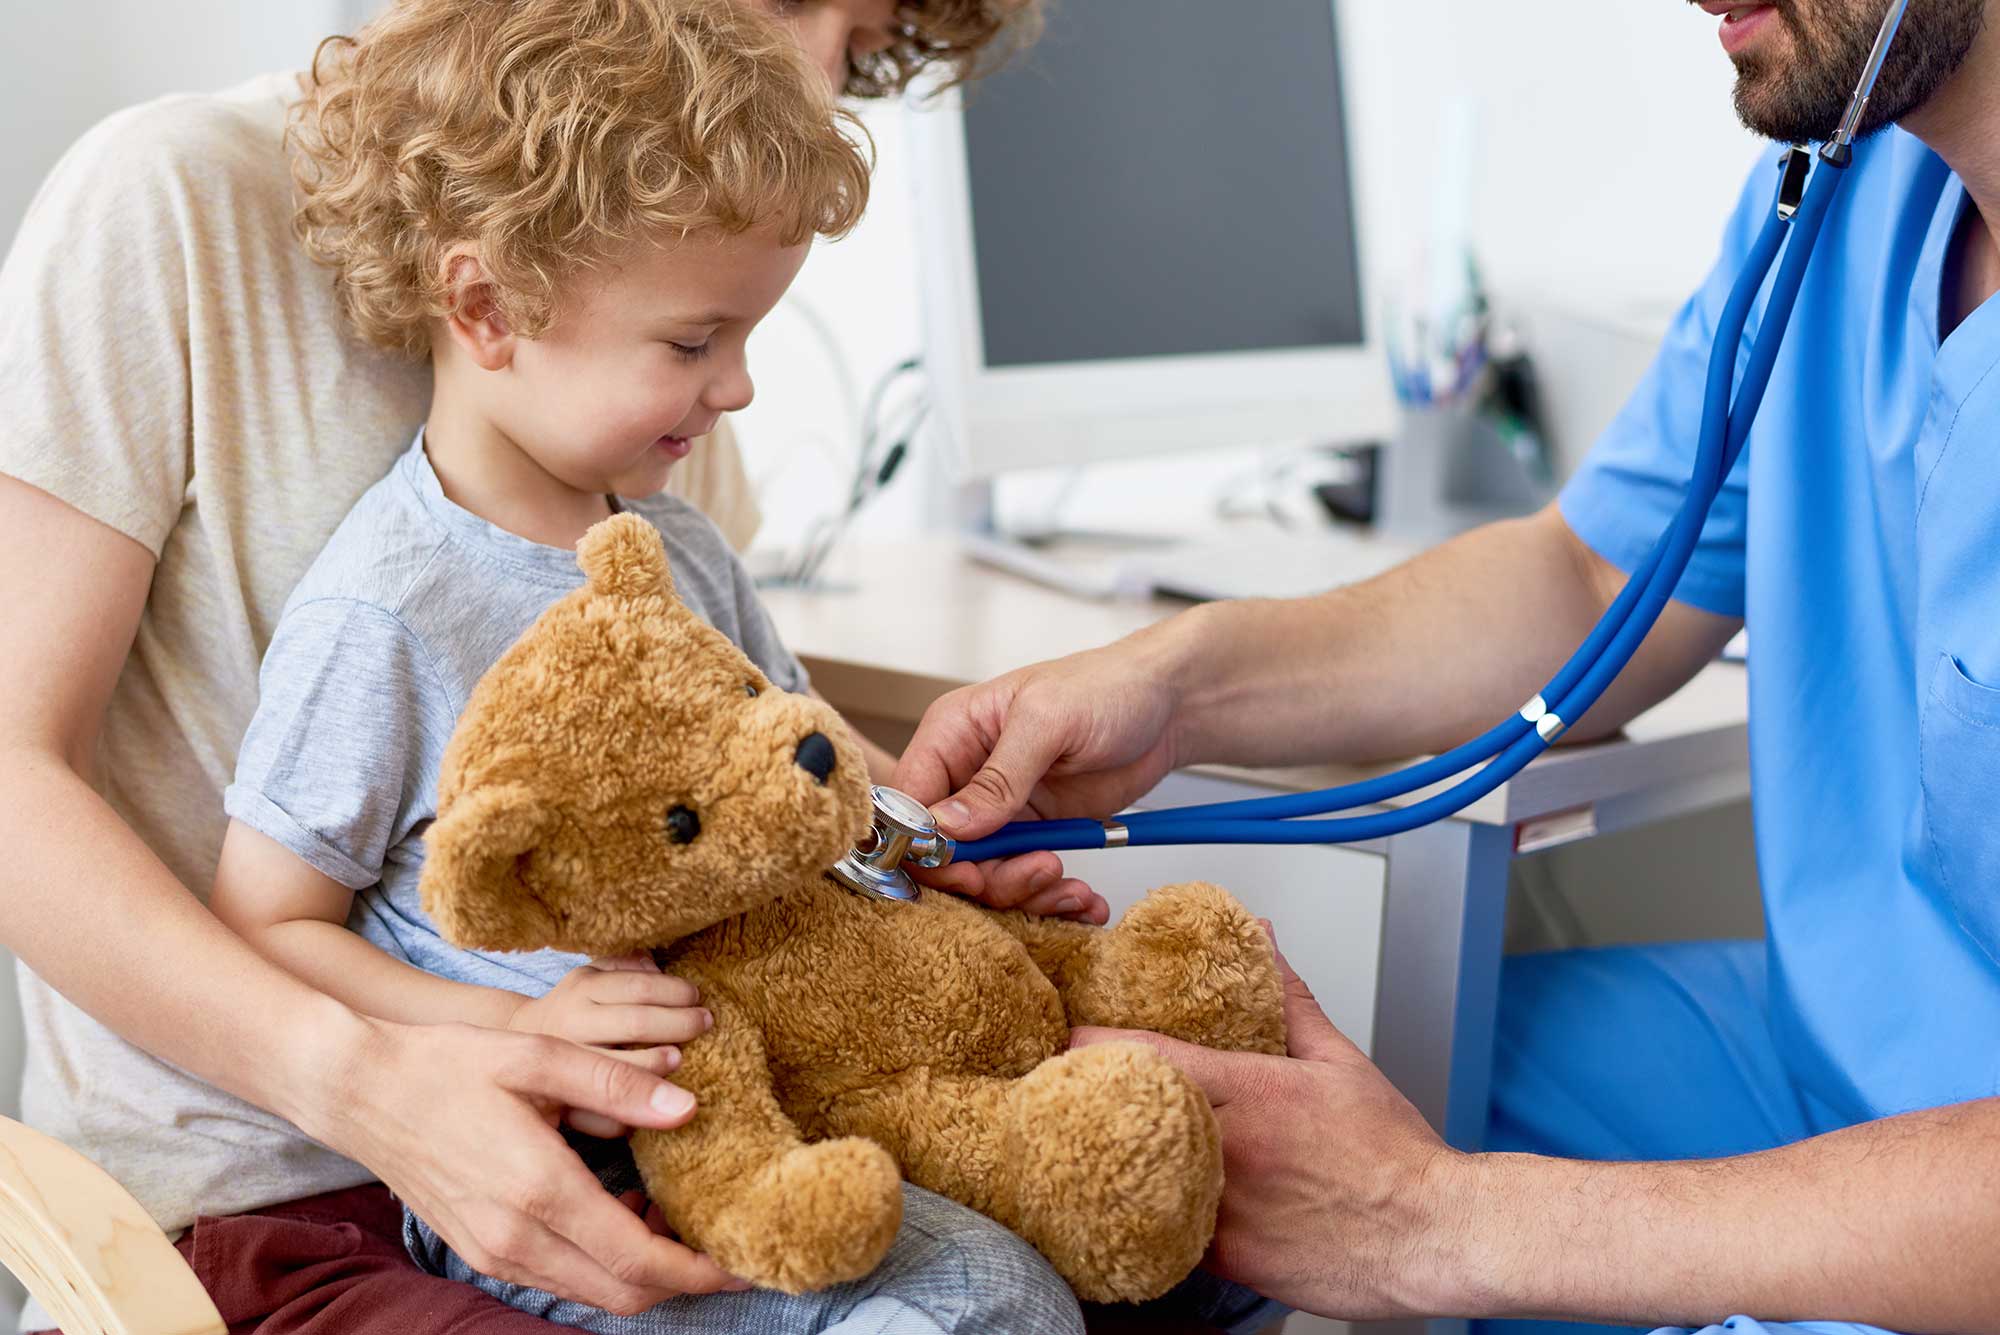 A child holds a teddy bear as a doctor examines the bear